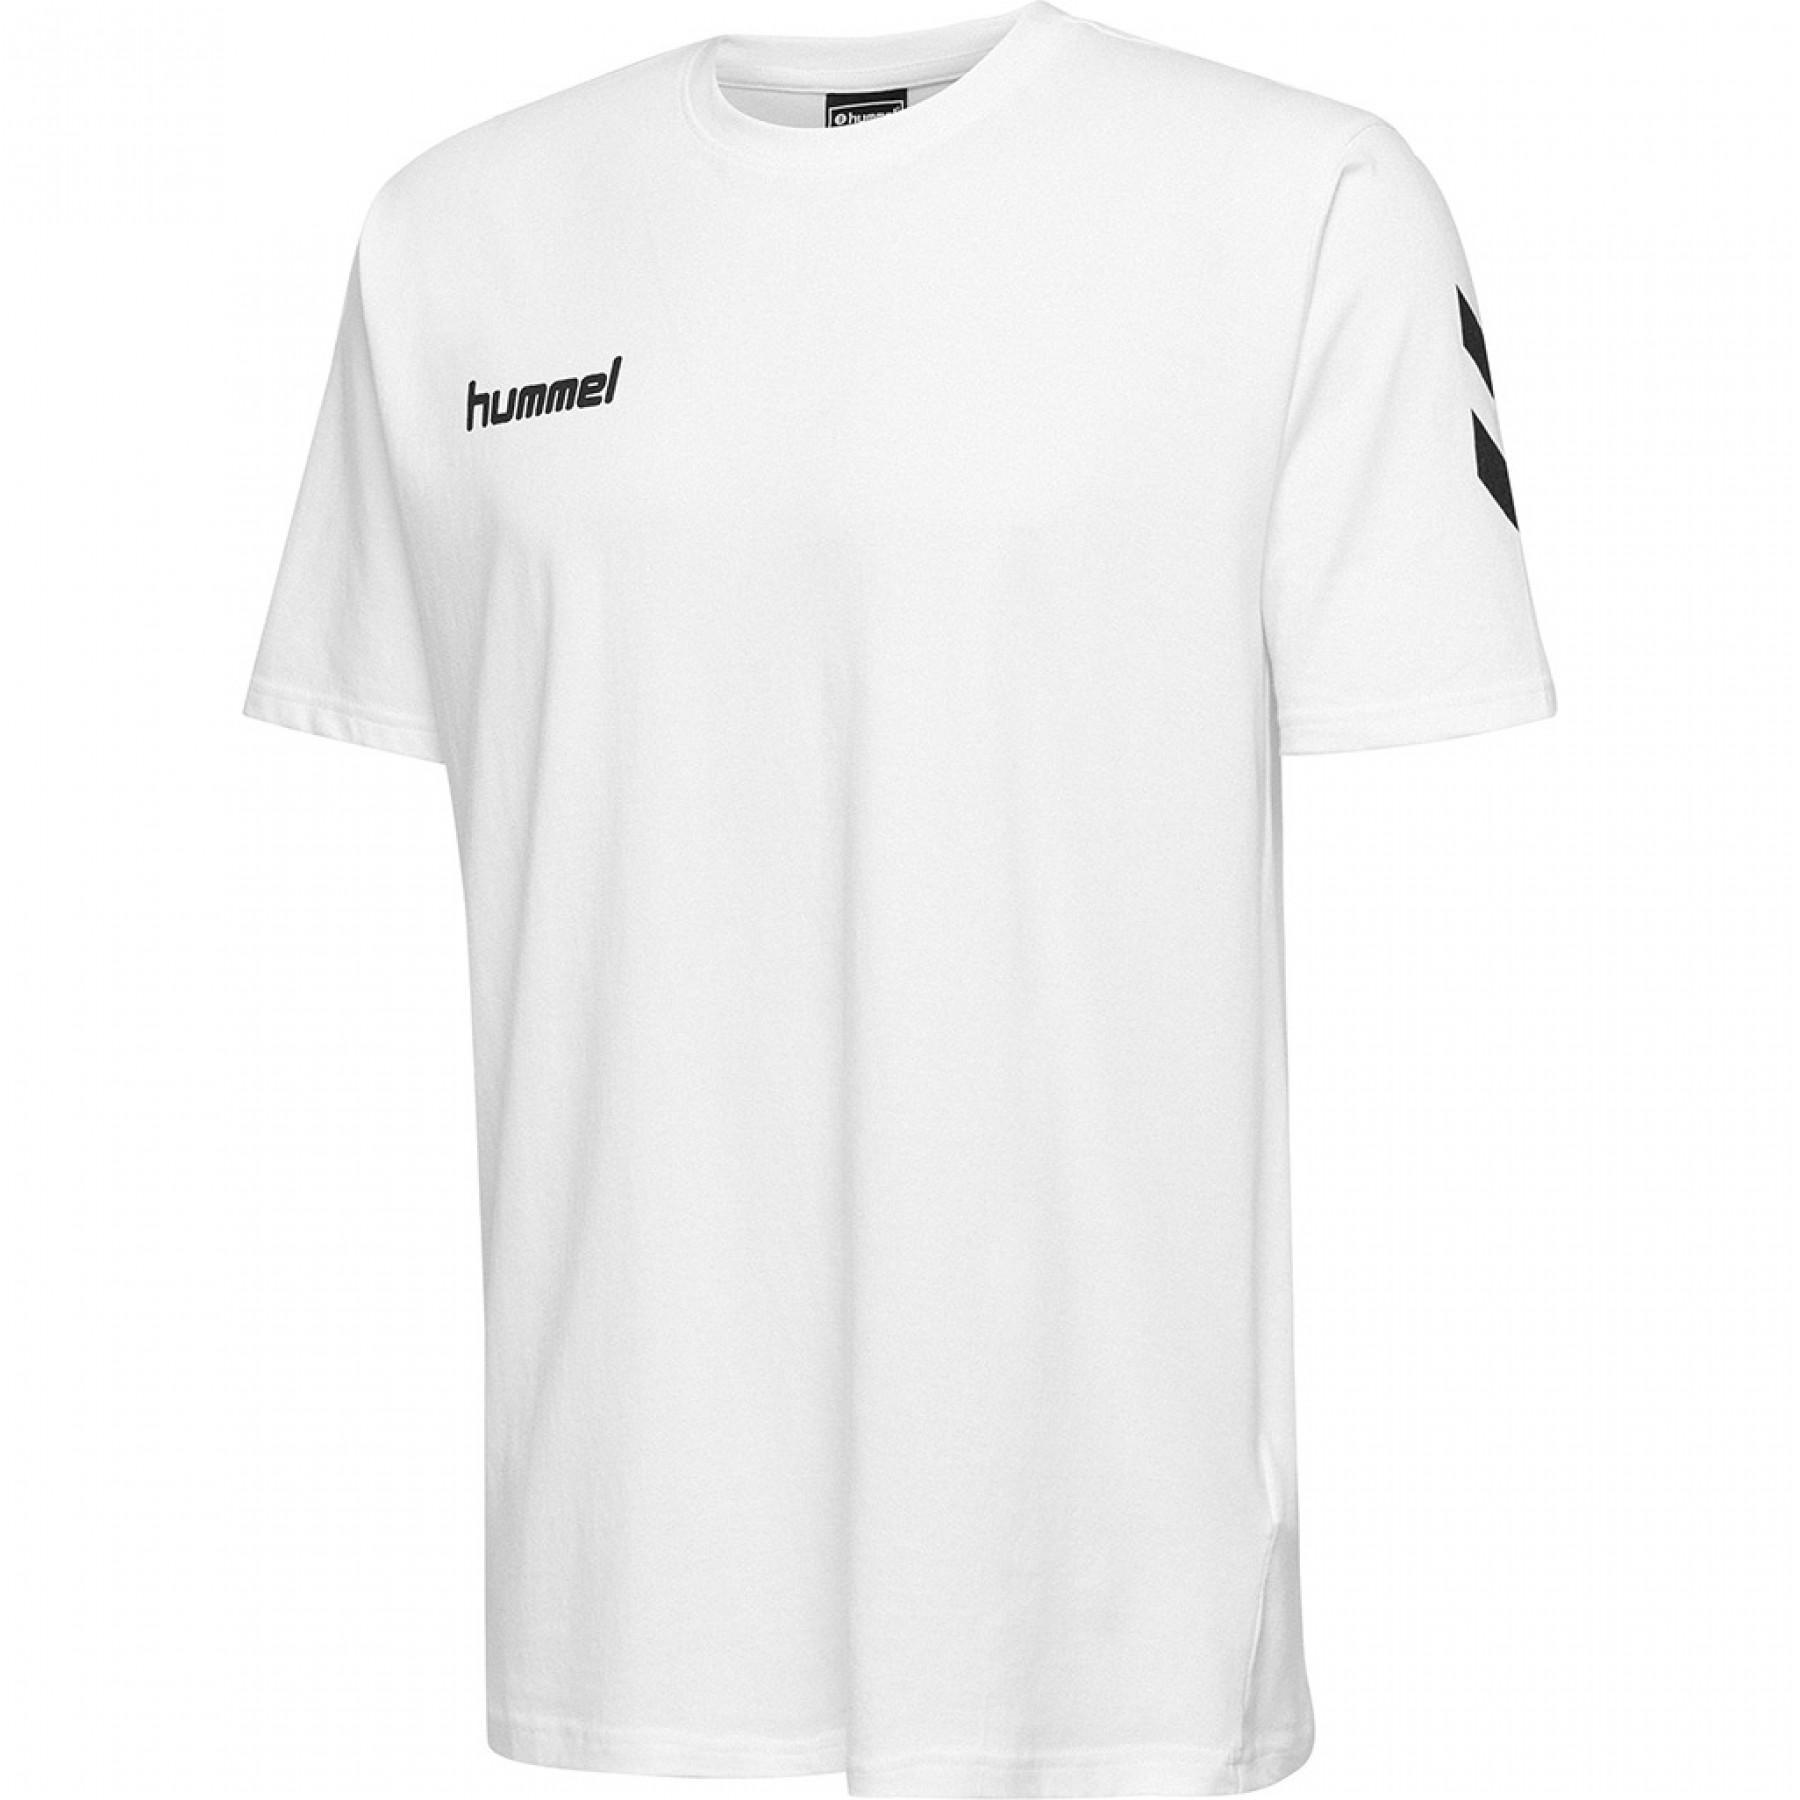 HUMMEL Peter T-Shirt Dunkelblau NEU 